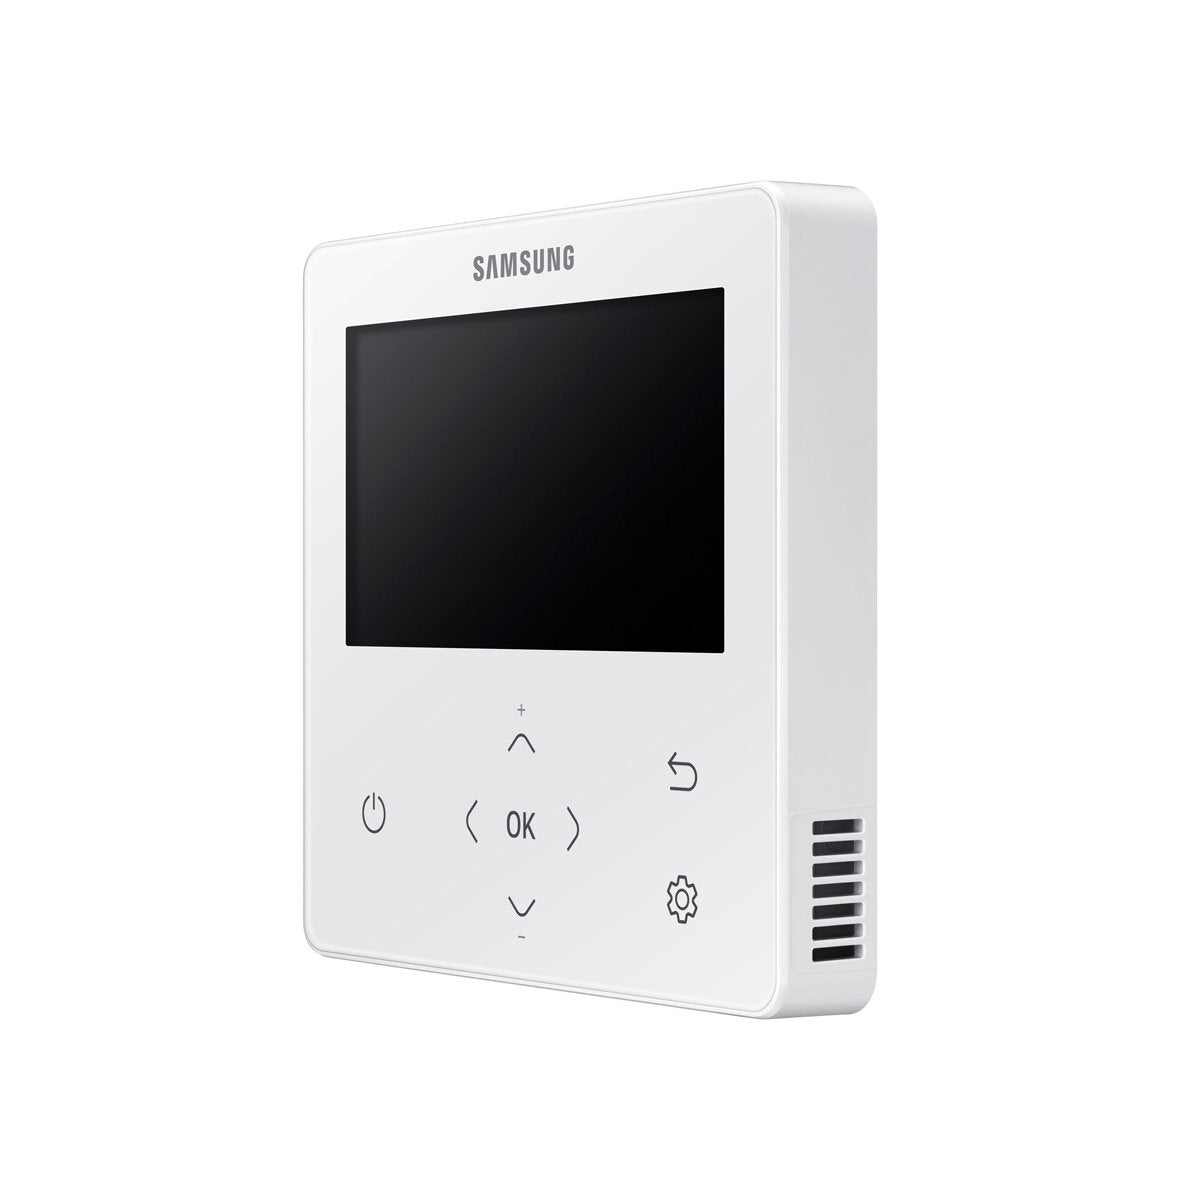 Samsung Air Conditioner Cassette WindFree 1 Way Trial Split 9000 + 12000 + 12000 BTU Inverter A++ Außengerät 6,8 kW